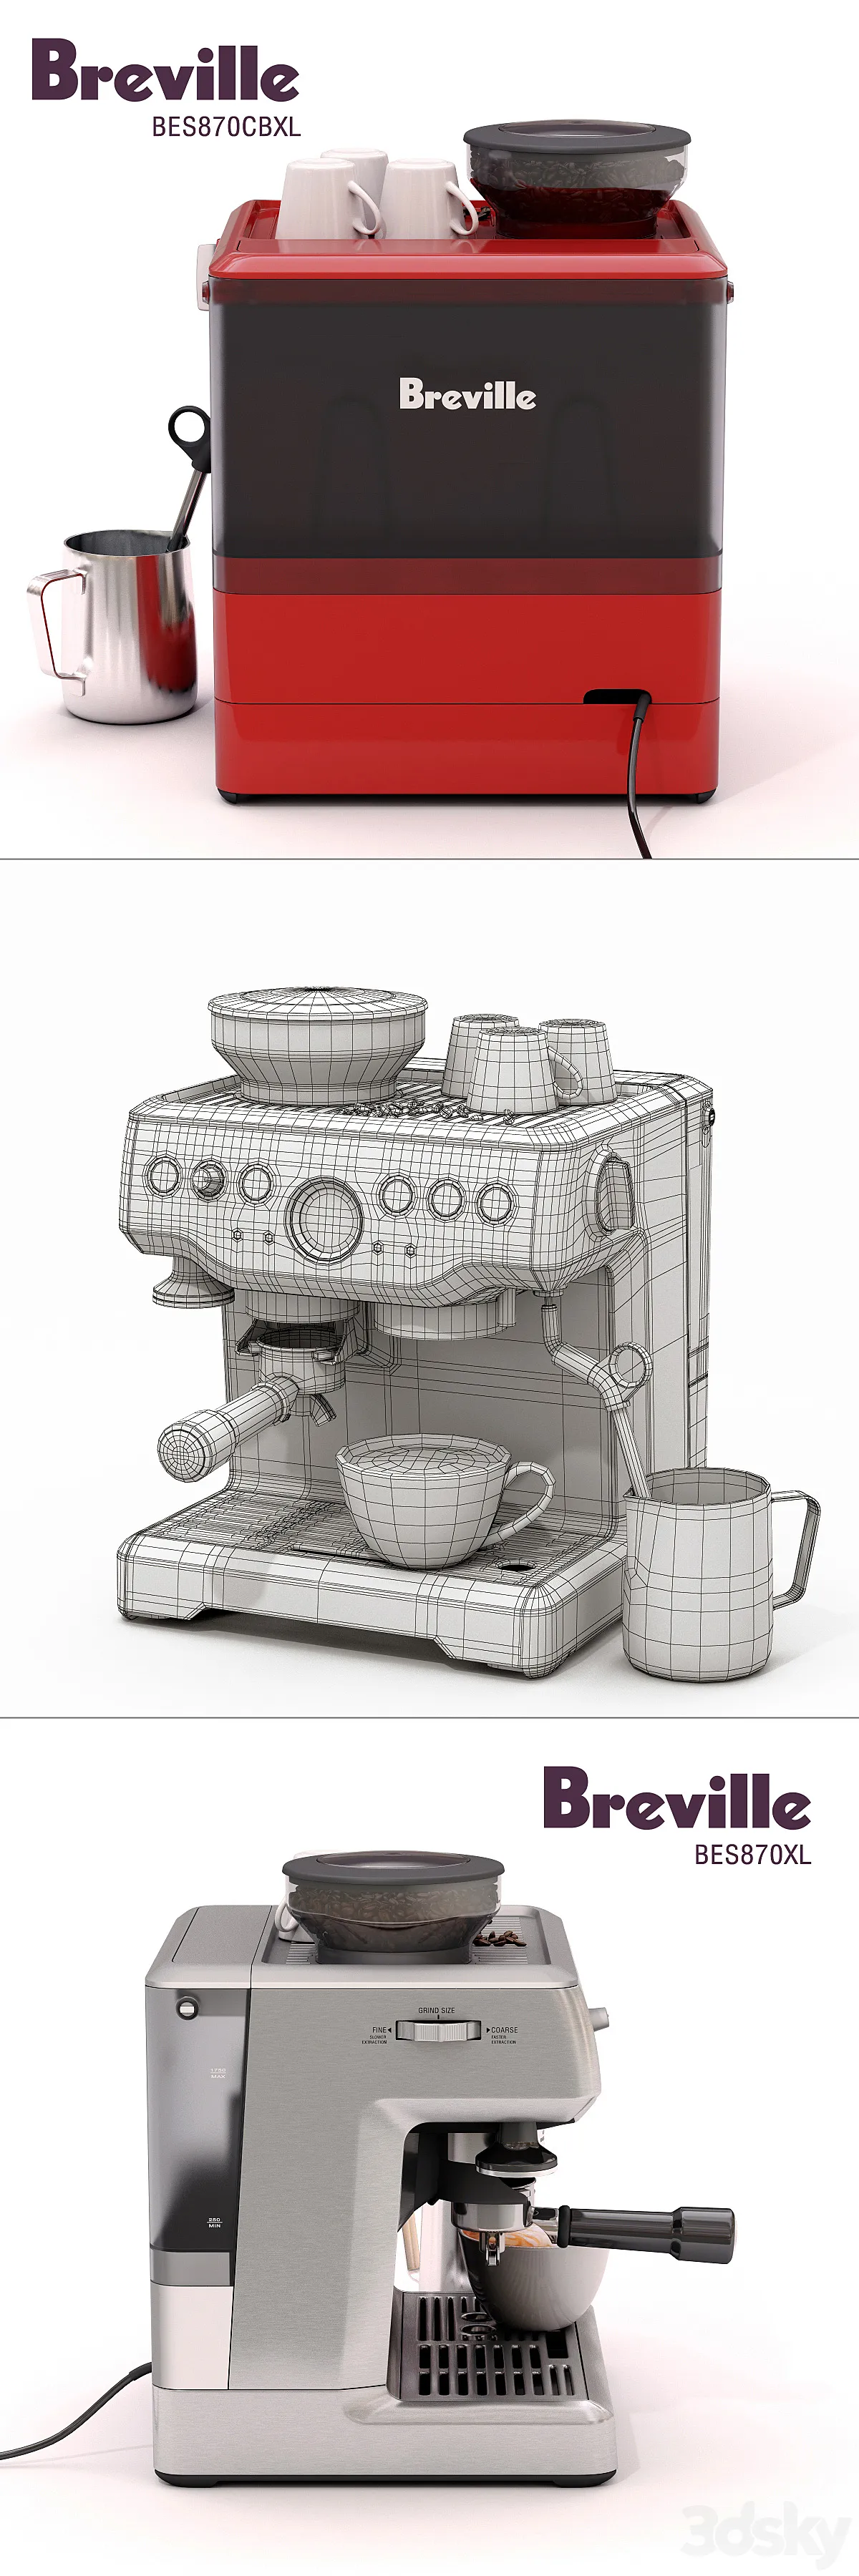 مدل سه بعدی قهوه ساز 2 - 6